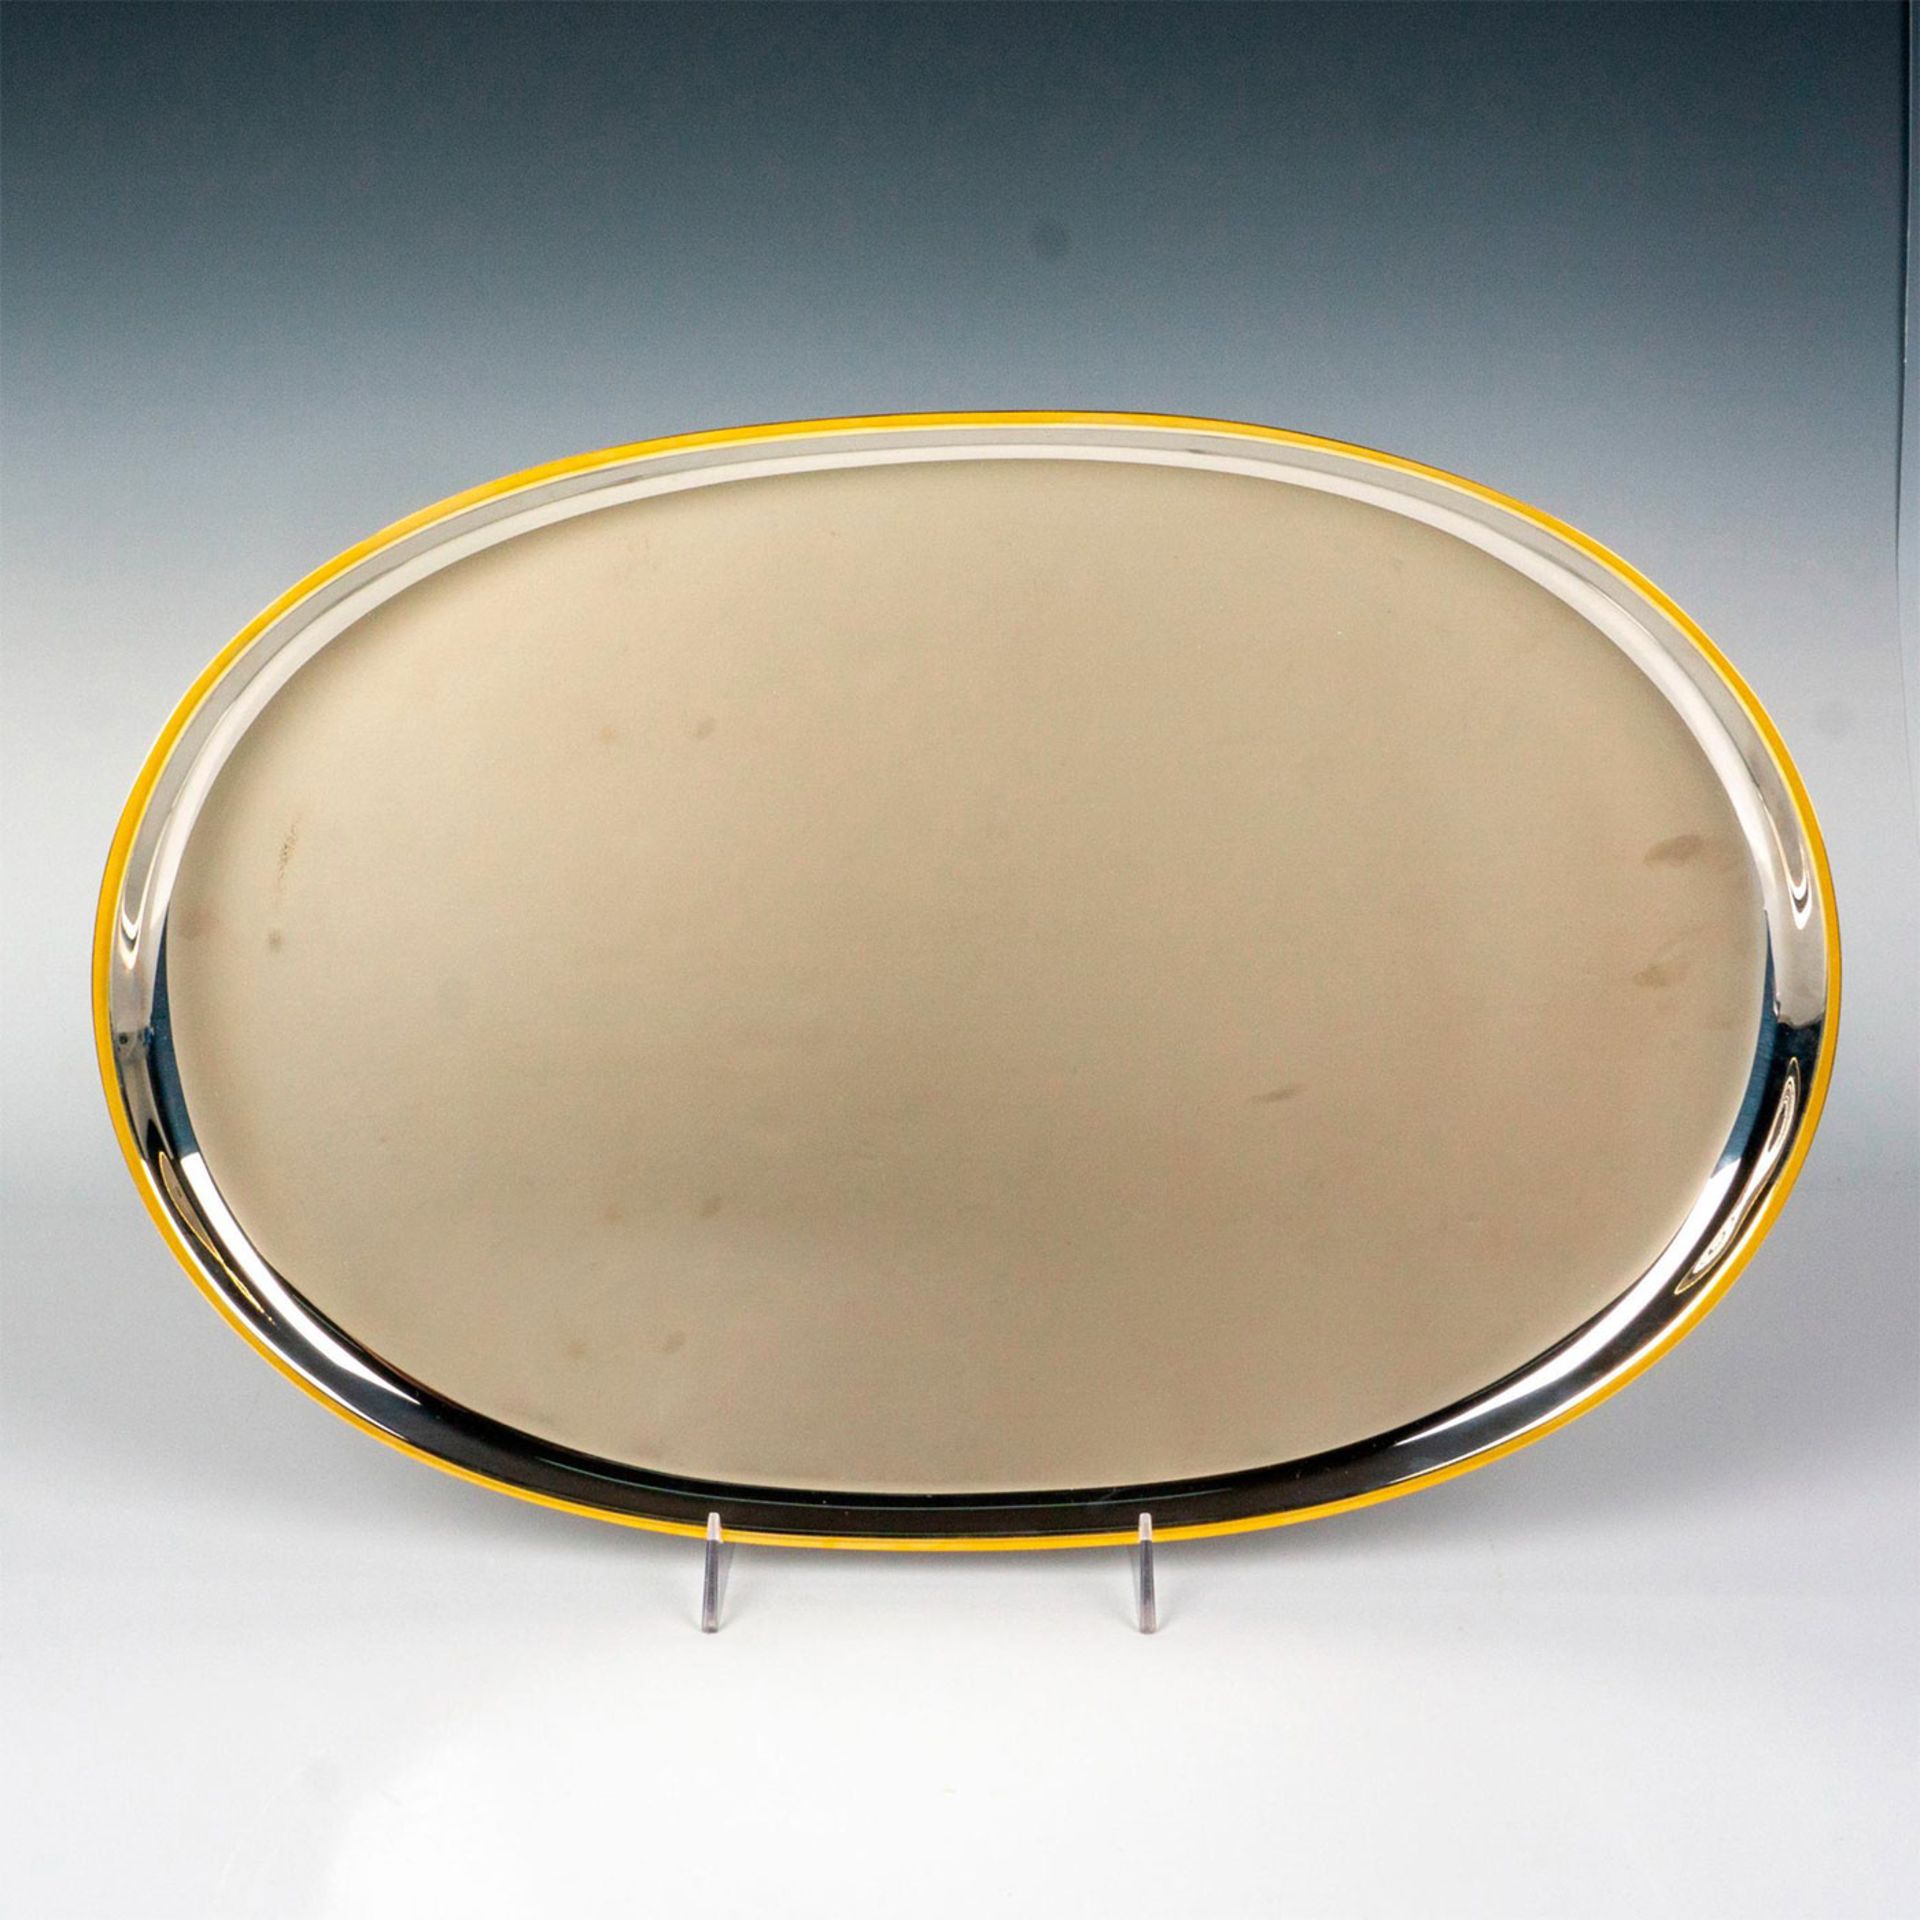 Italian Effepi Stainless Steel Platter - Image 2 of 3